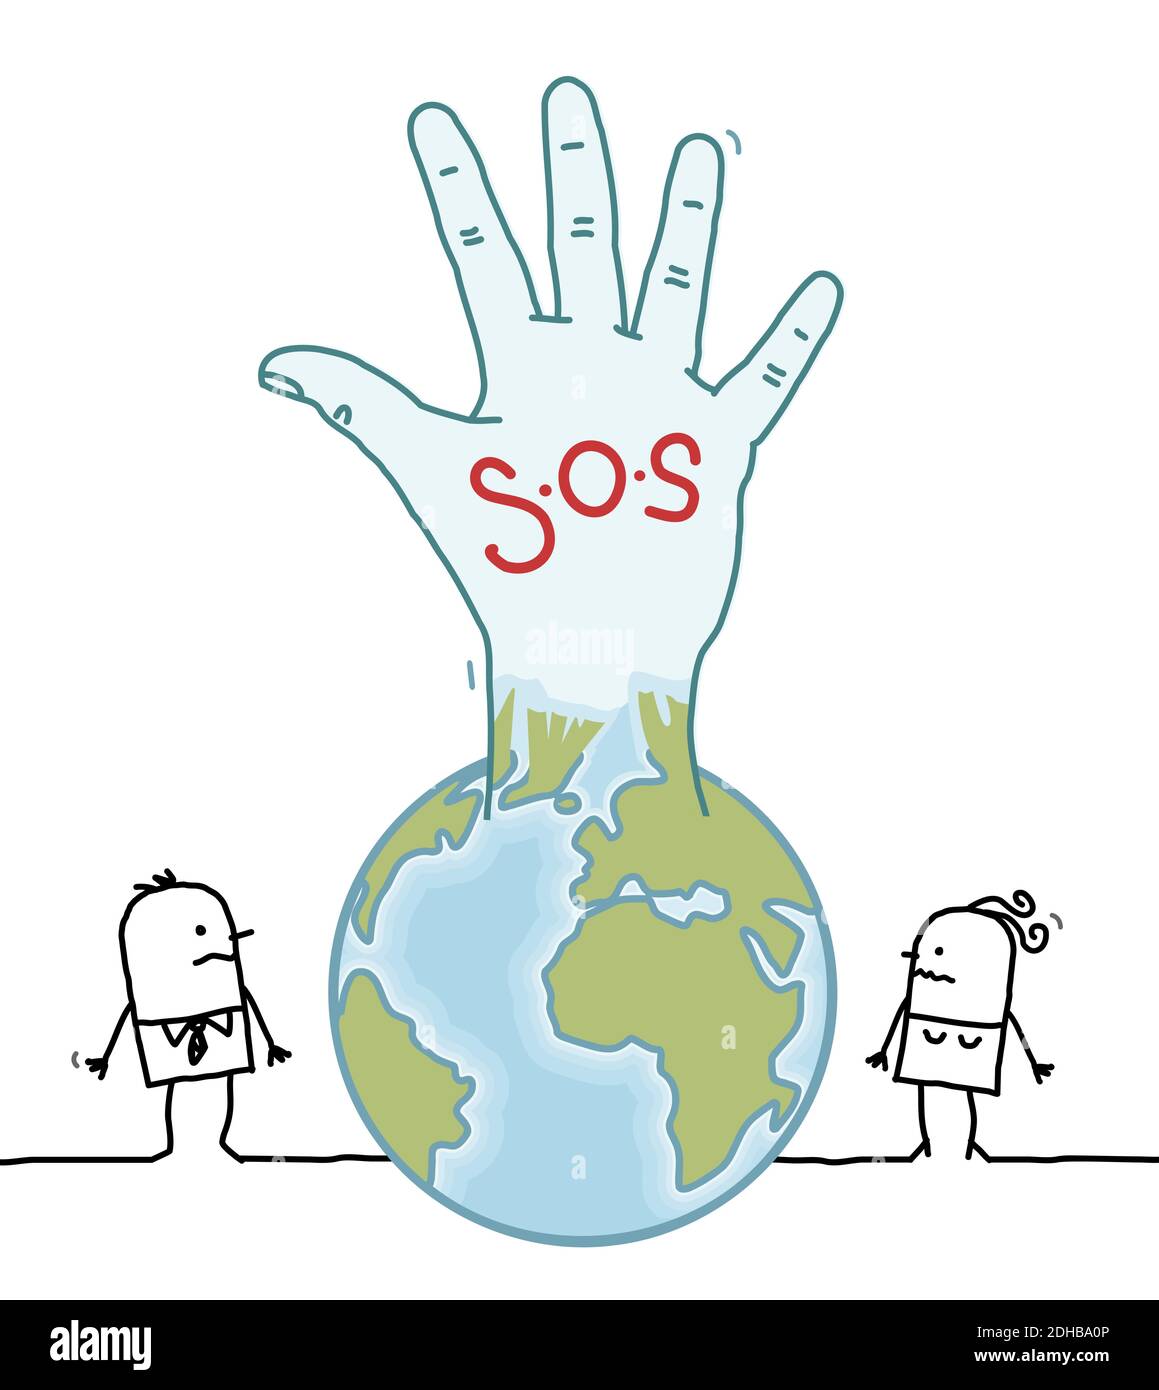 Dessins à la main des gens de Cartoon et de la planète Terre en hausse a Main avec le panneau S.O.S Illustration de Vecteur